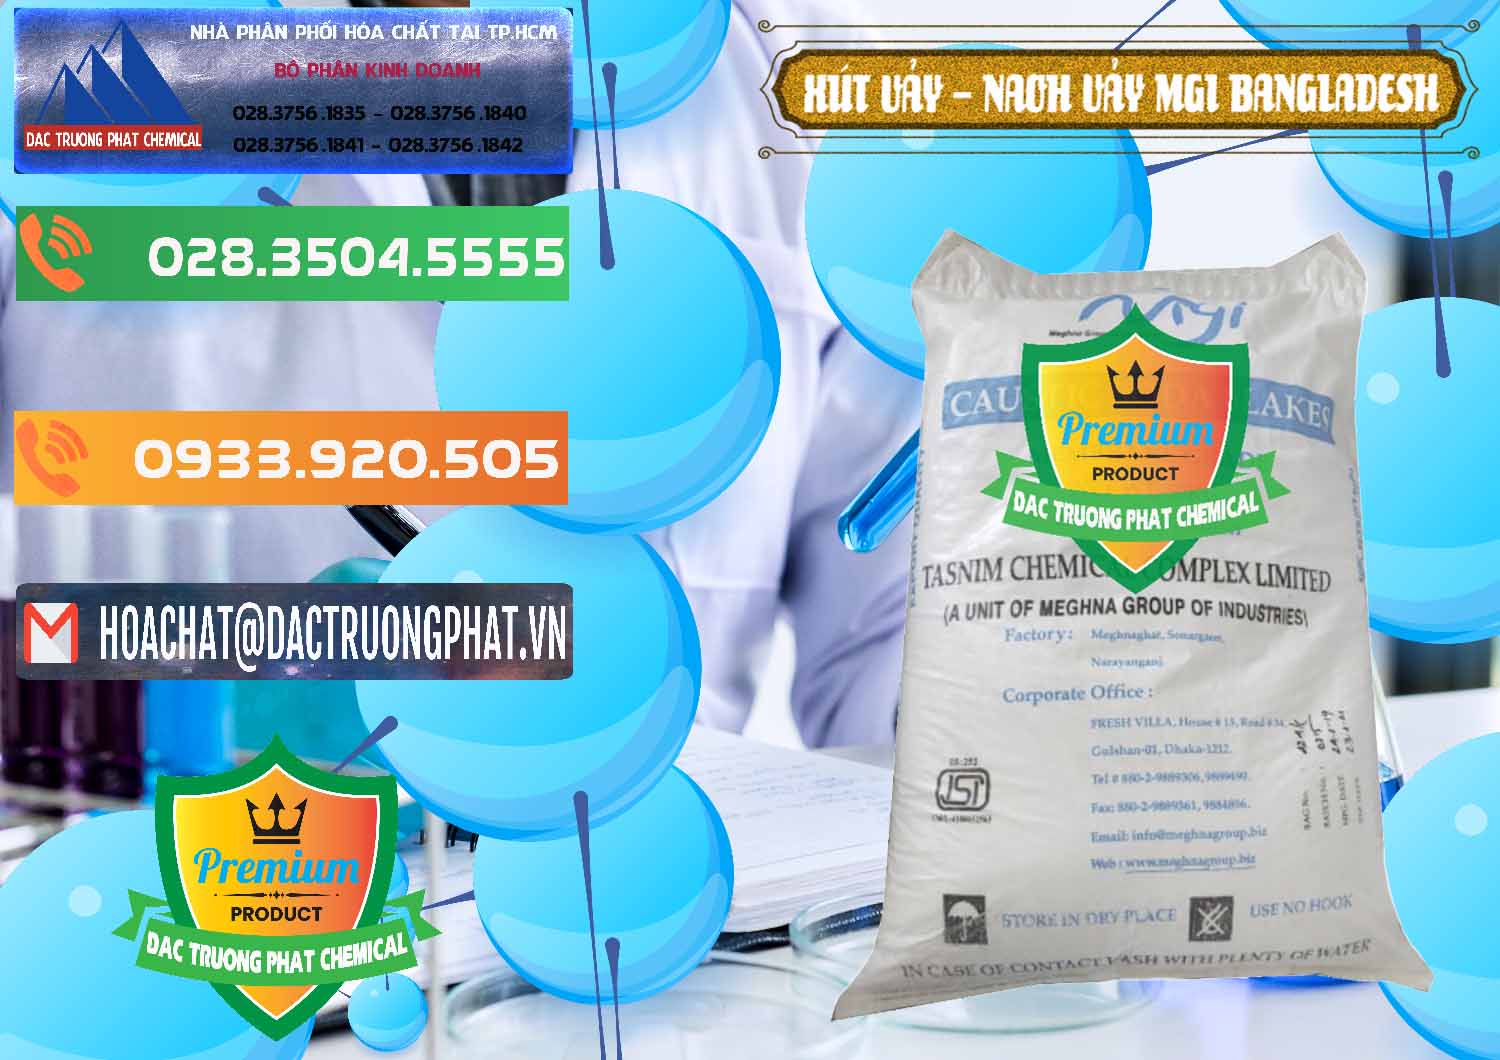 Cty bán ( phân phối ) Xút Vảy - NaOH Vảy 99% MGI Bangladesh - 0274 - Công ty chuyên phân phối và nhập khẩu hóa chất tại TP.HCM - hoachatxulynuoc.com.vn